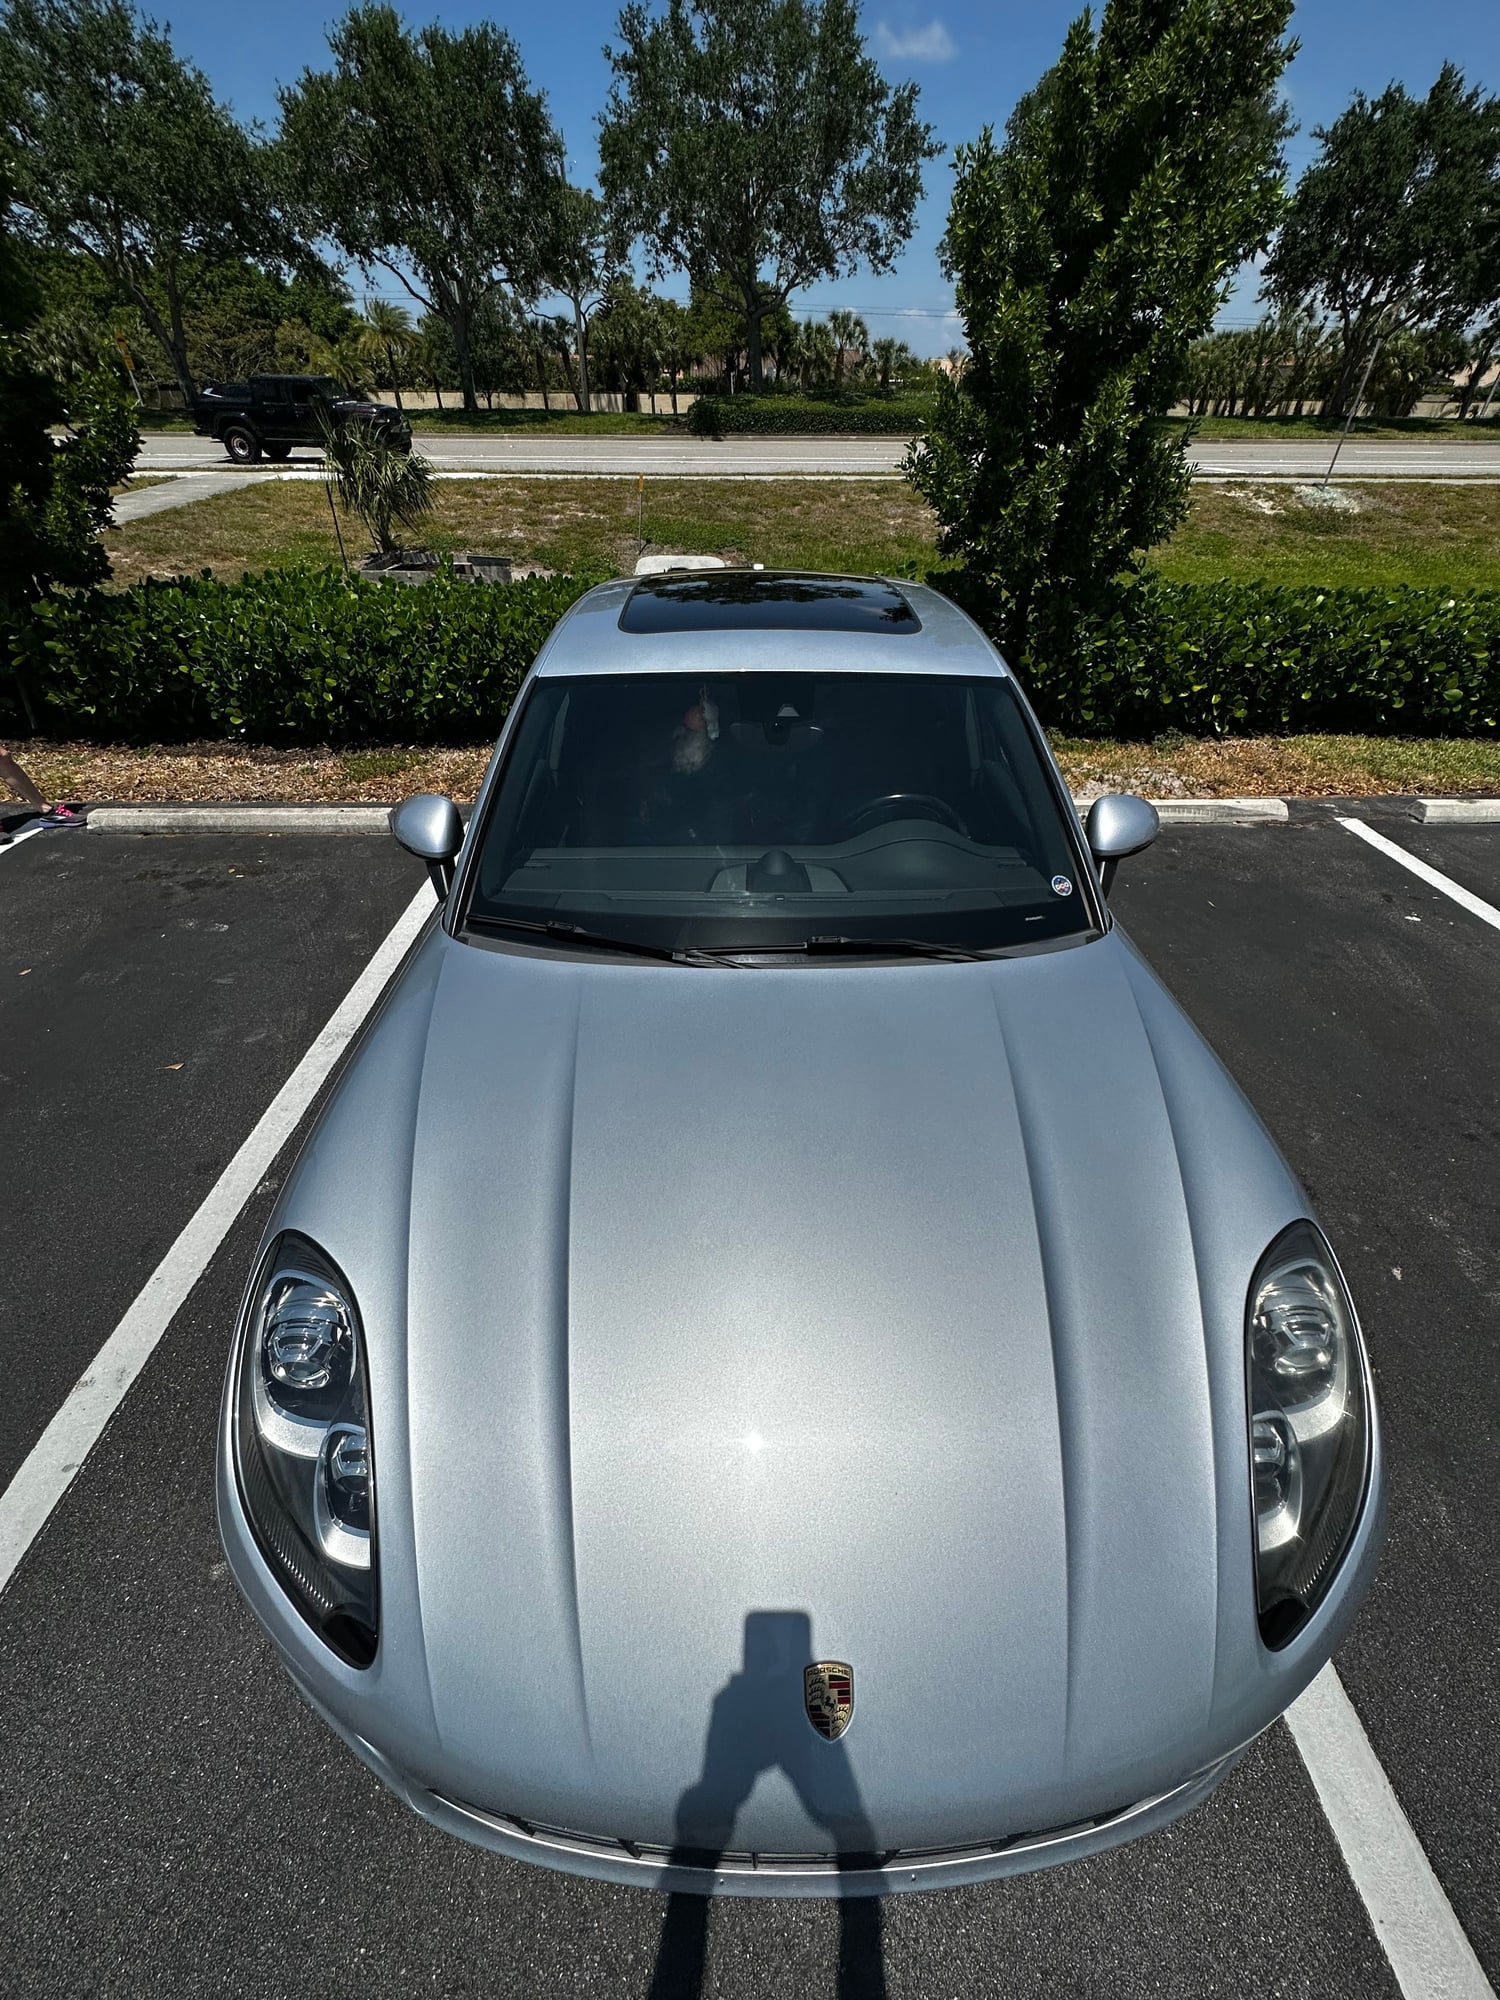 2018 Porsche Macan - 2018 Porsche Macan Sport Edition - Used - Naples, FL 34119, United States